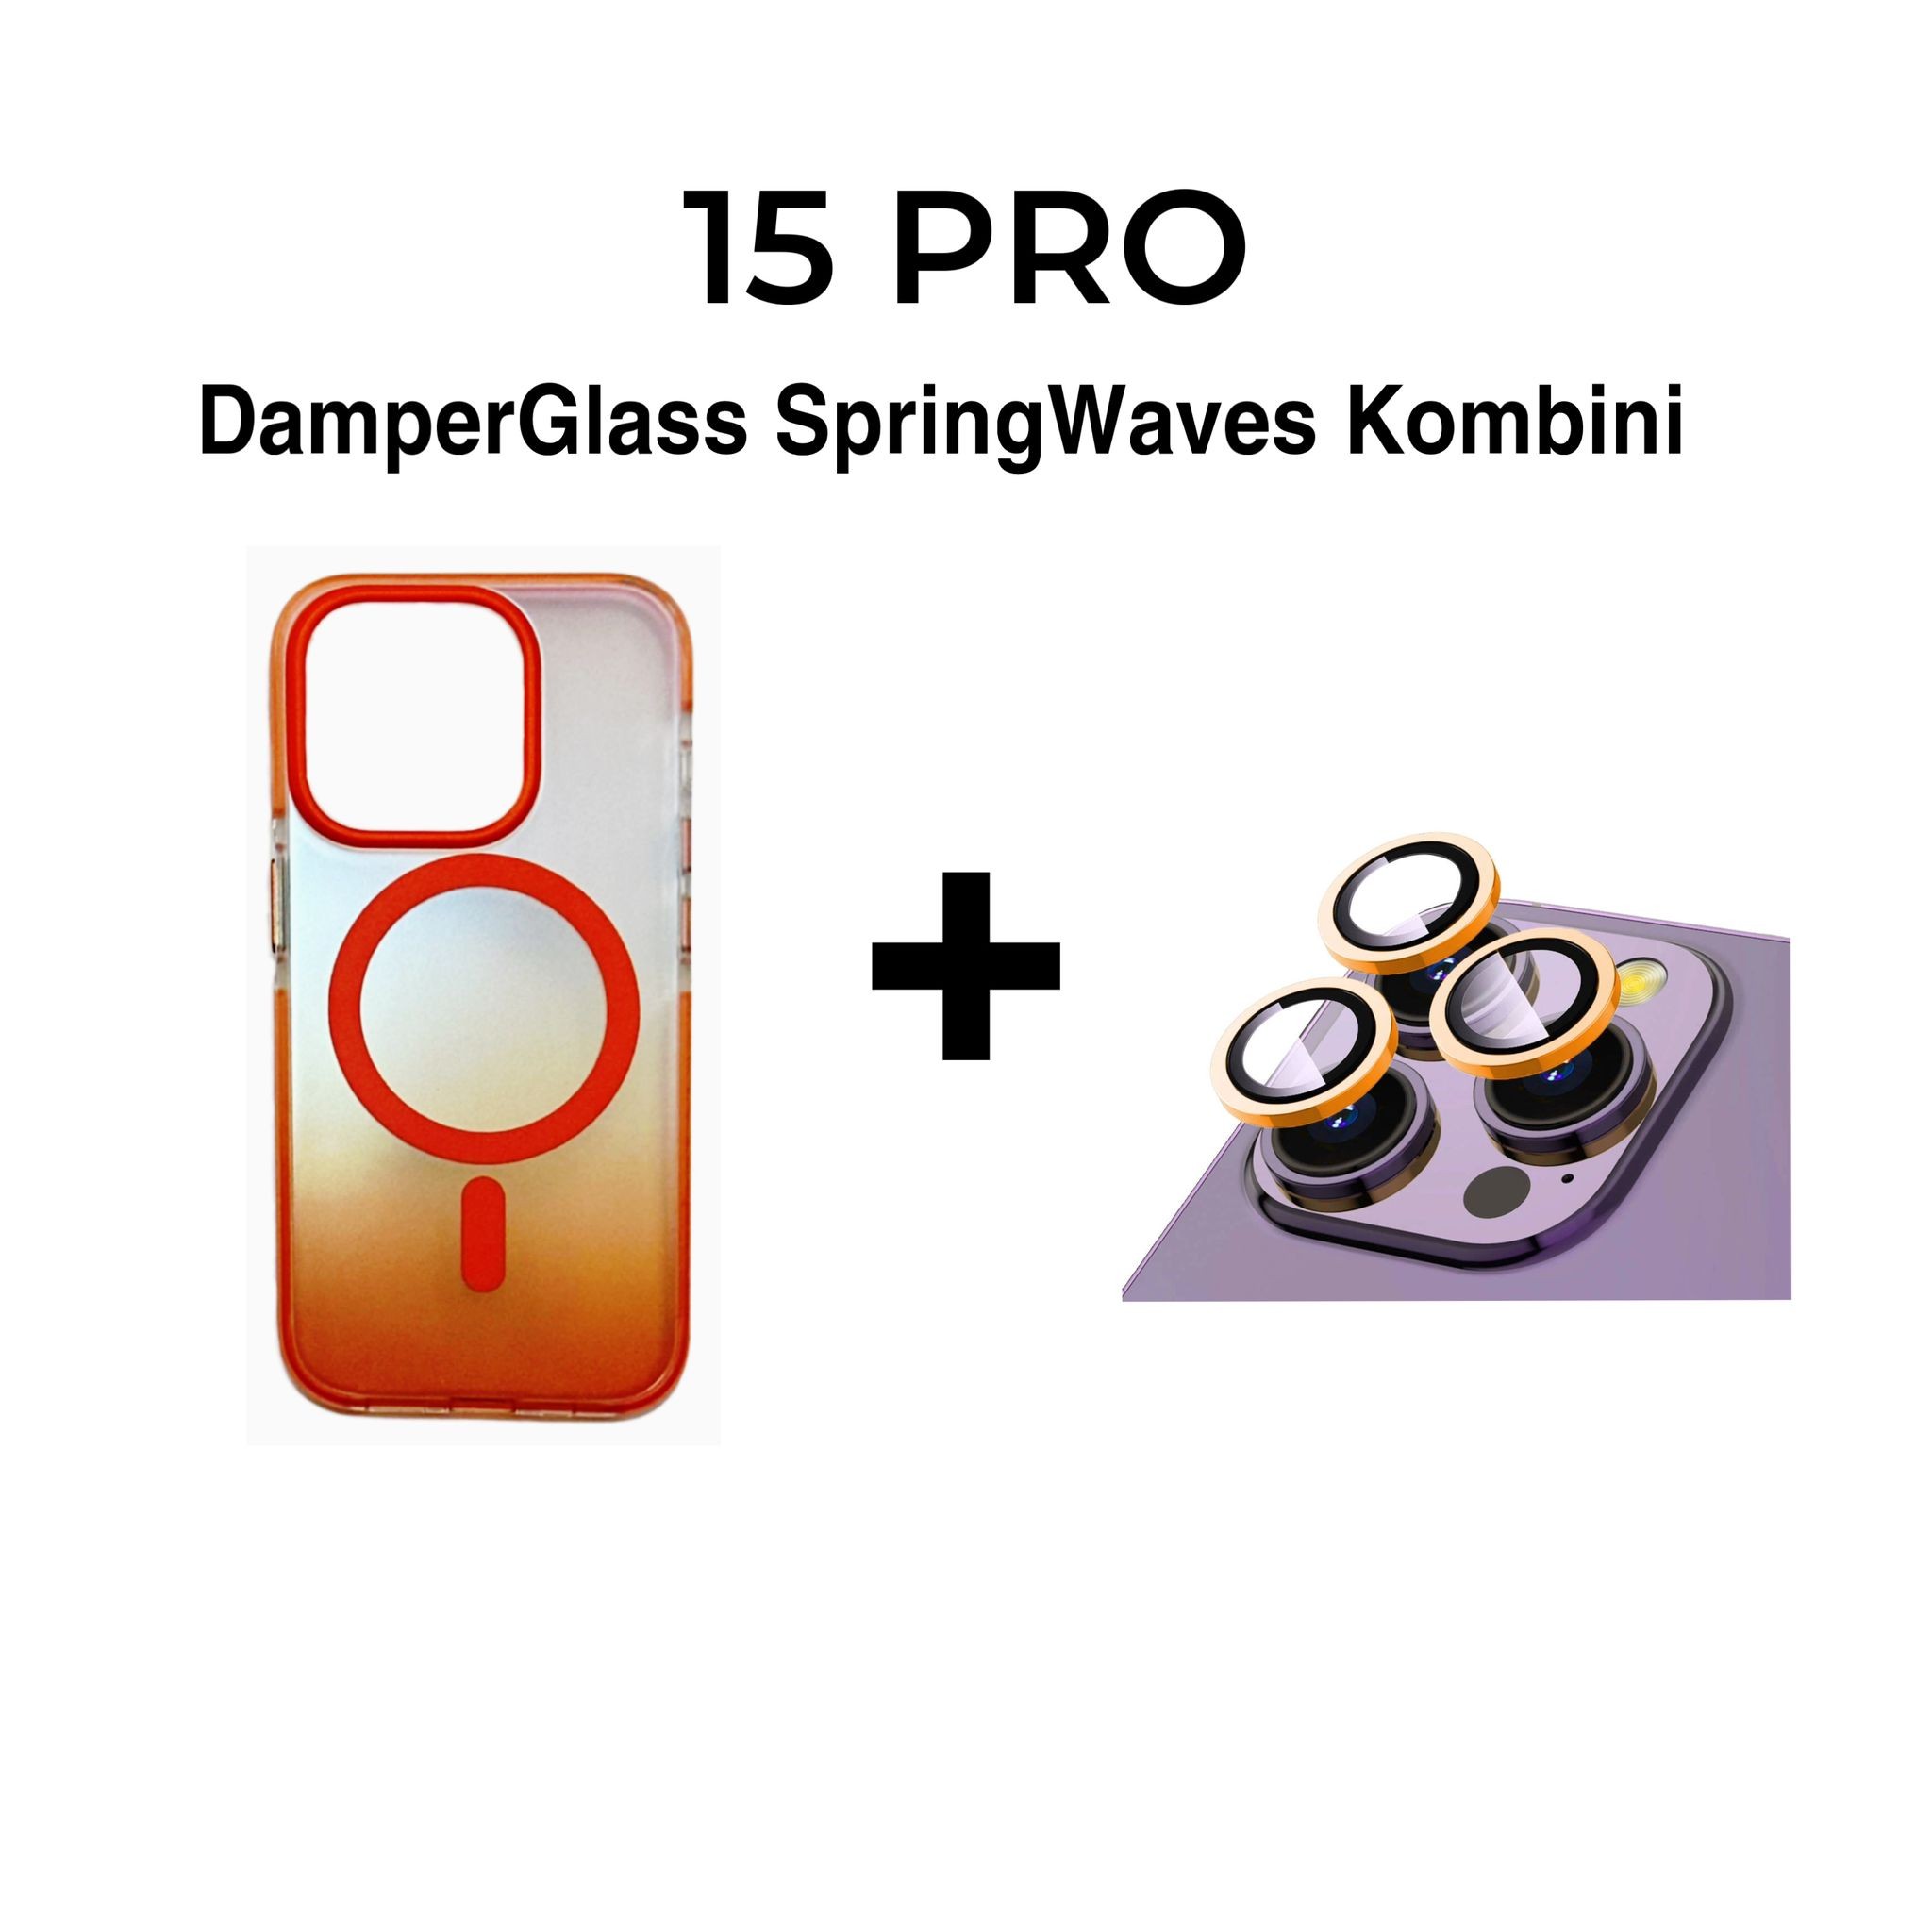 DamperGlass SpringWaves Serisi Turuncu Kombini